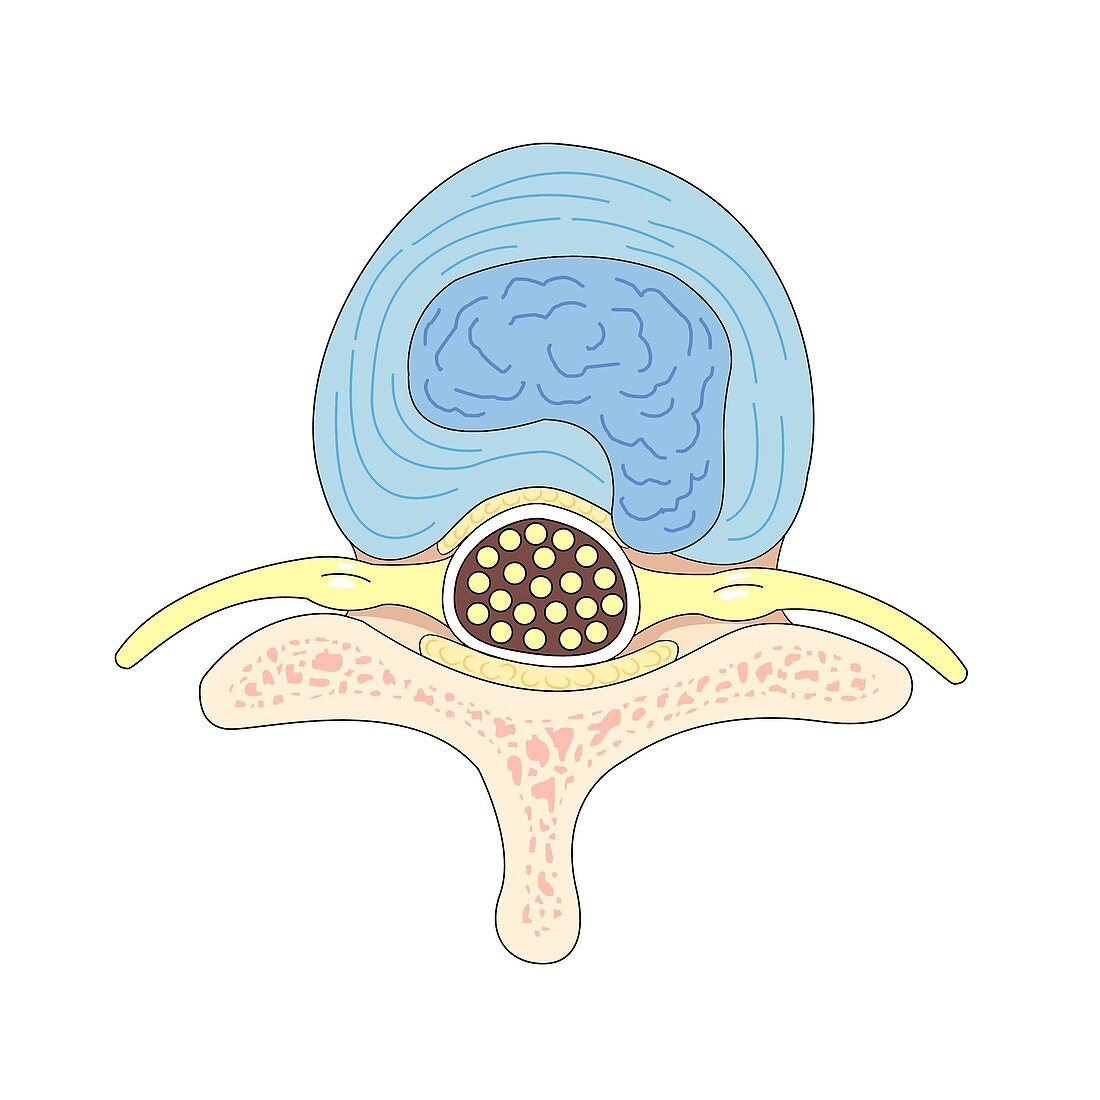 Herniated intervertebral disc